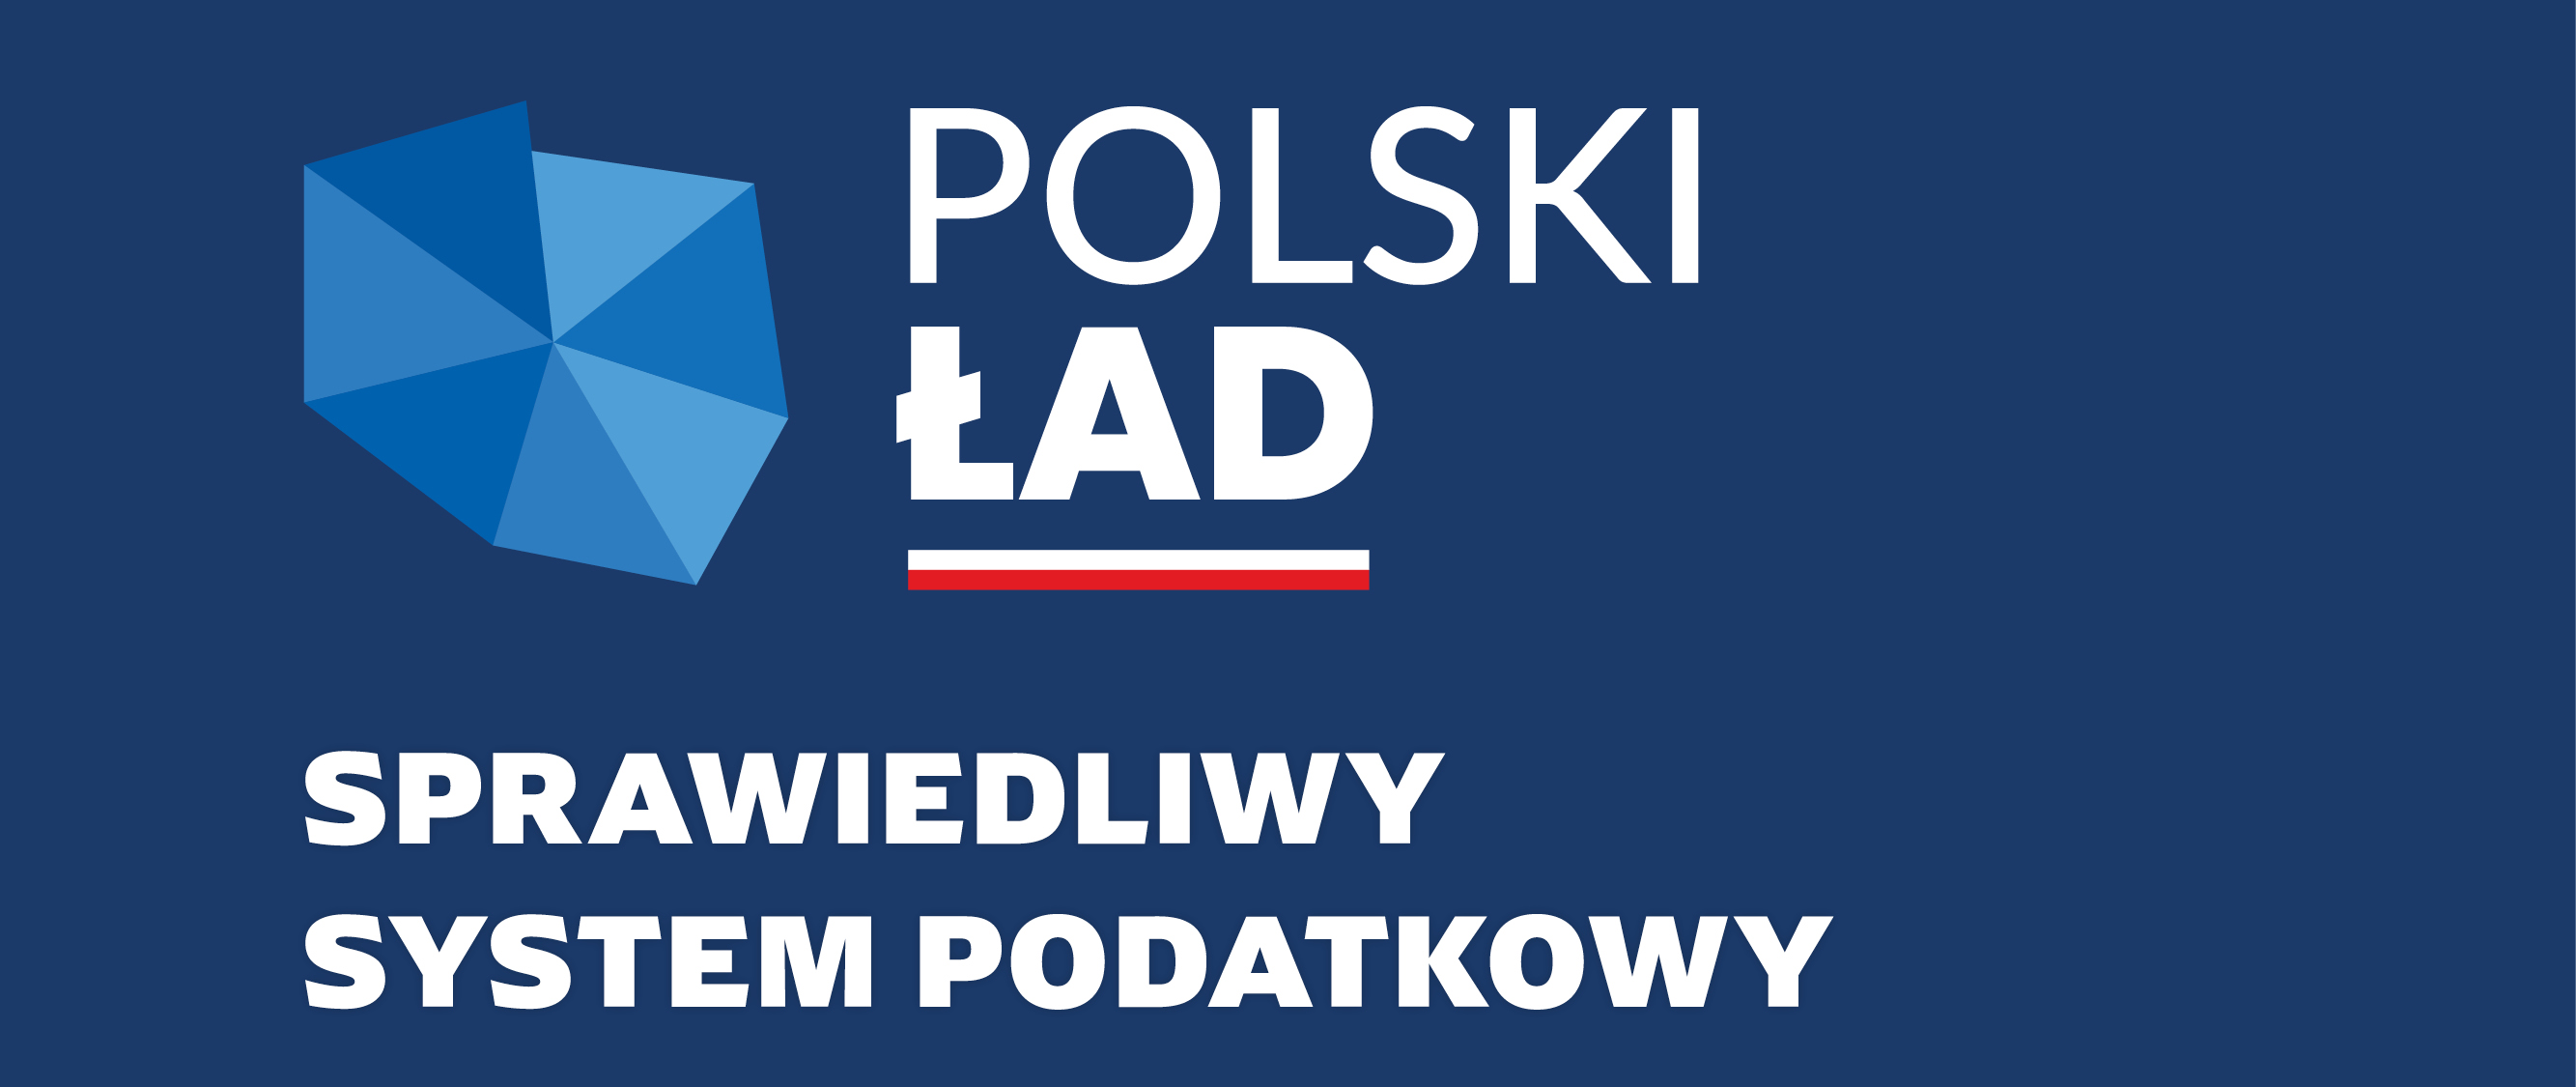 Logo Polski Ład. Napis: Sprawiedliwy System Podatkowy